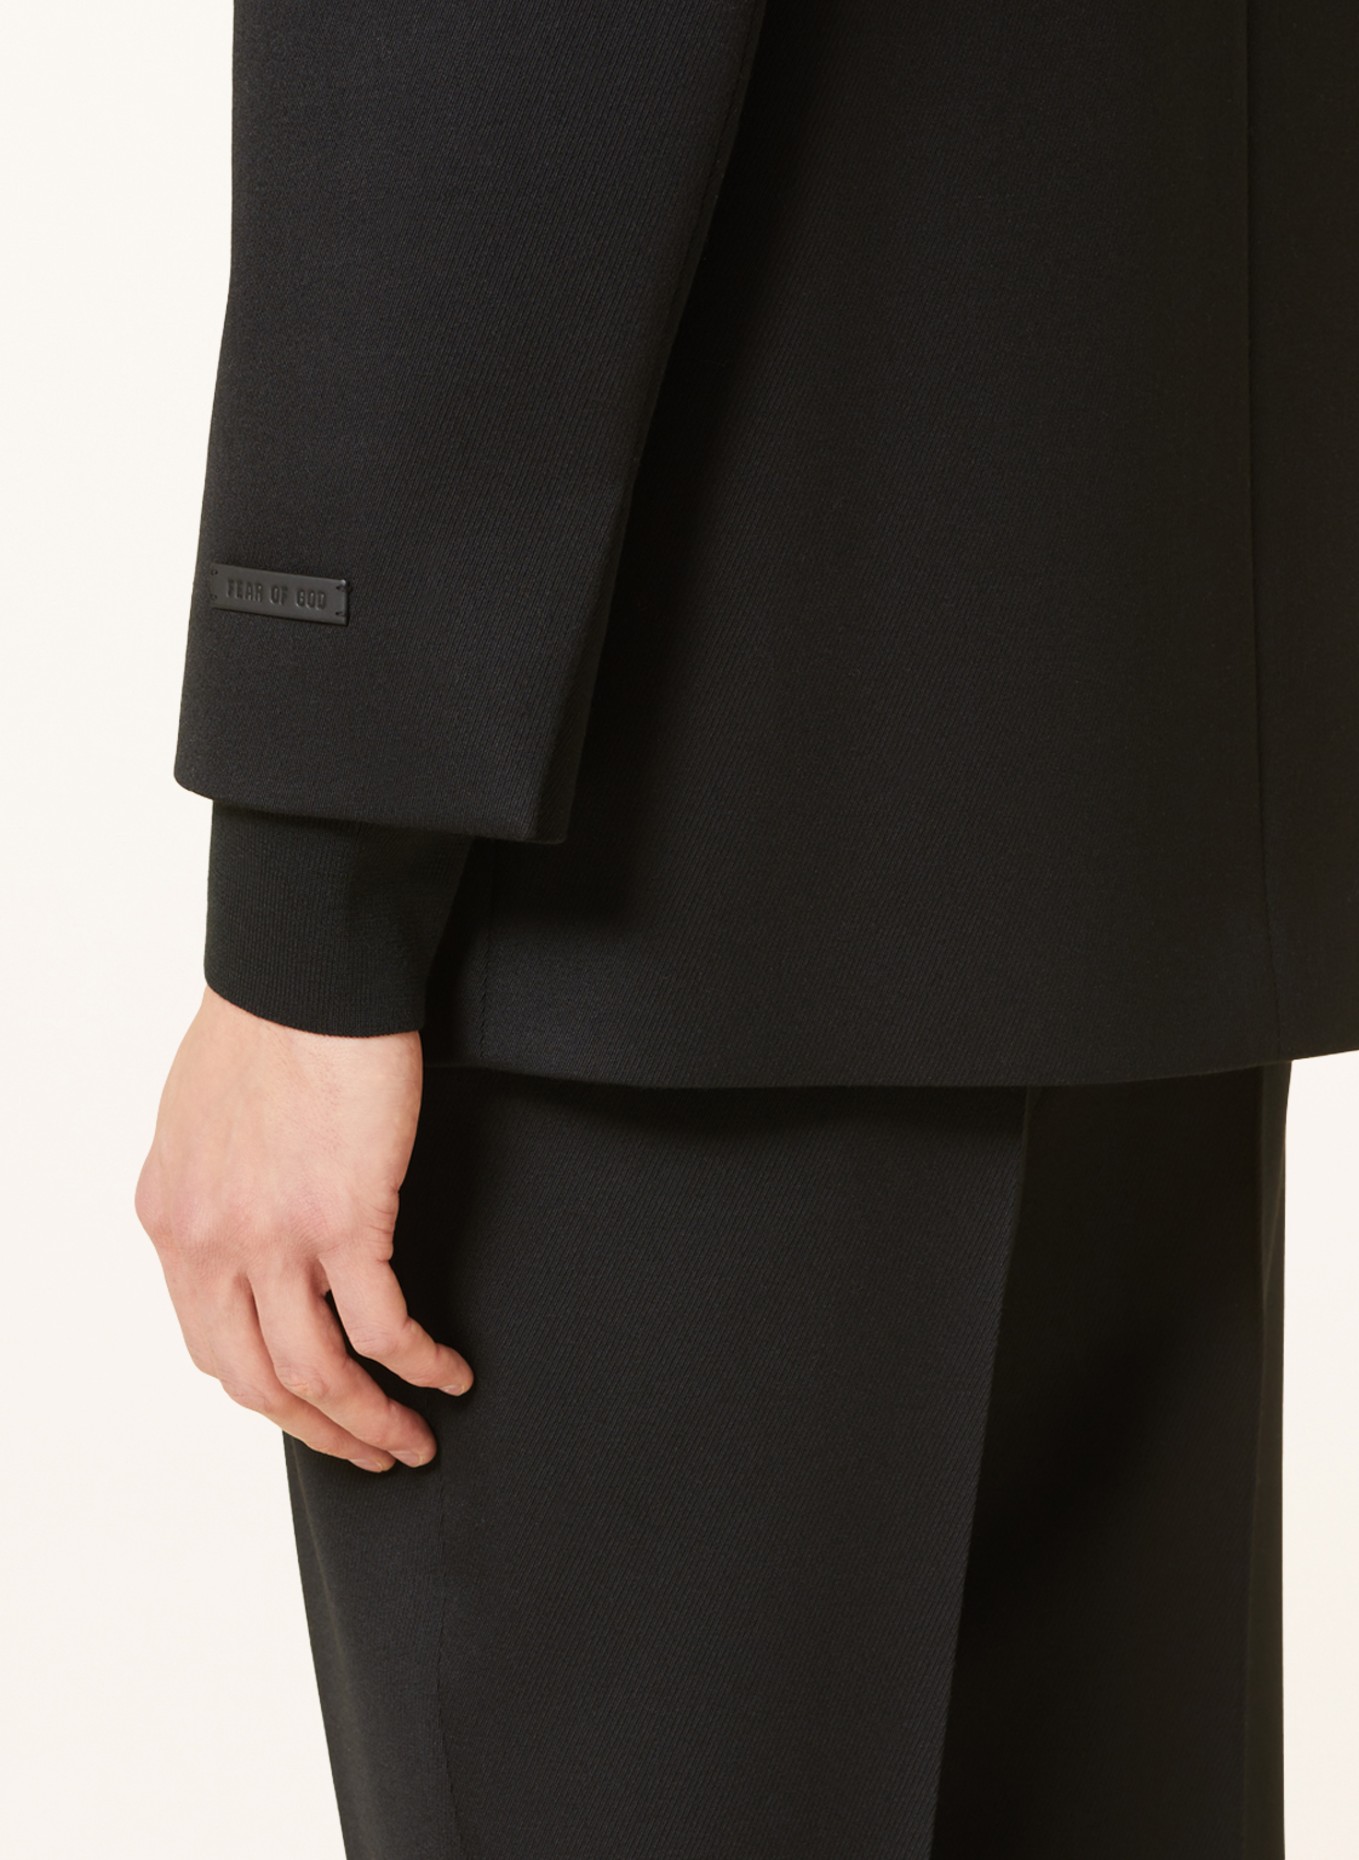 FEAR OF GOD Suit jacket regular fit, Color: BLACK (Image 6)